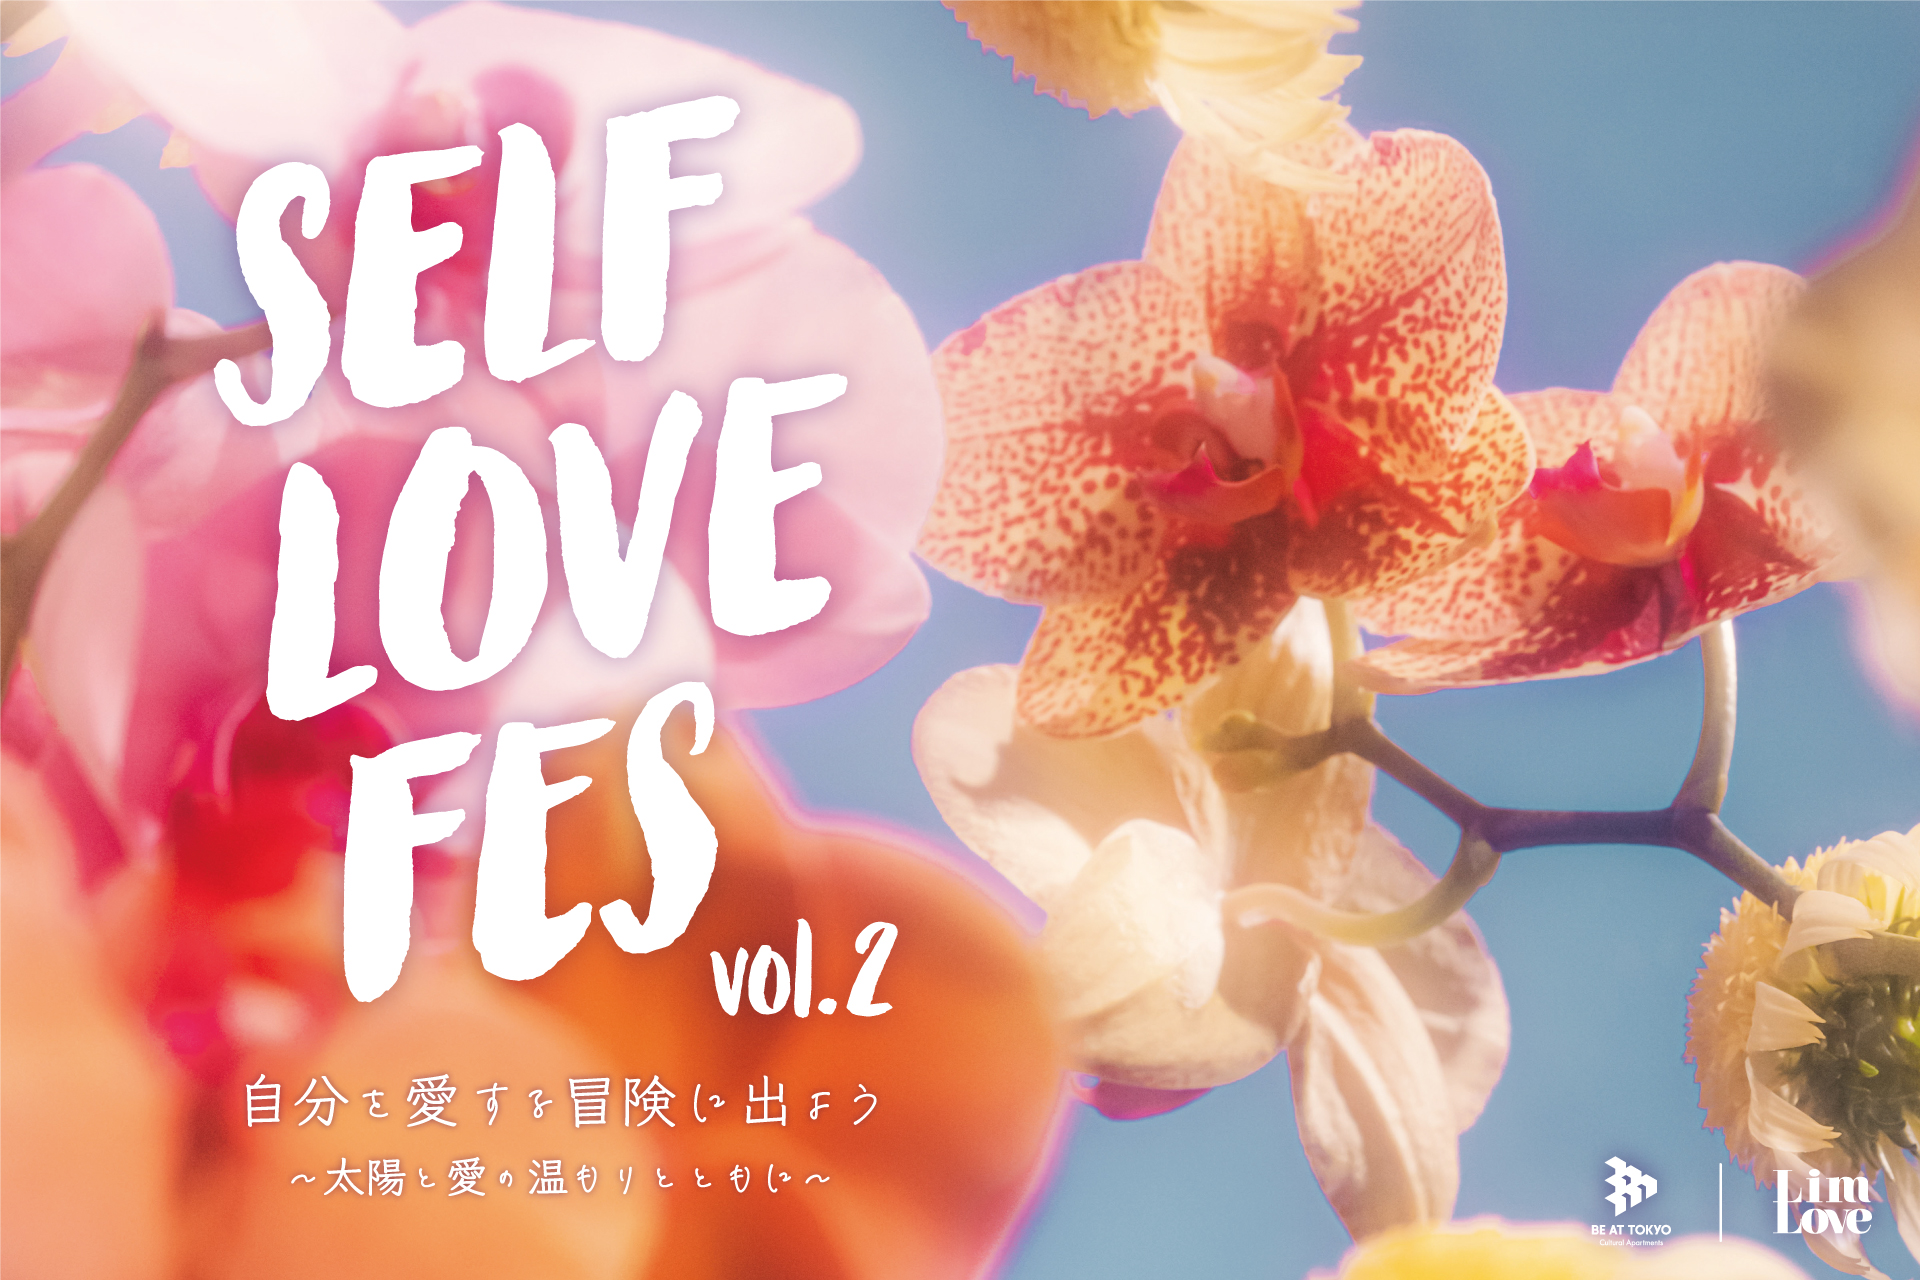 オンライン・ピル処方サービス「スマルナ」が「SELF LOVE FES（セルフラブフェス） vol.2」に出展